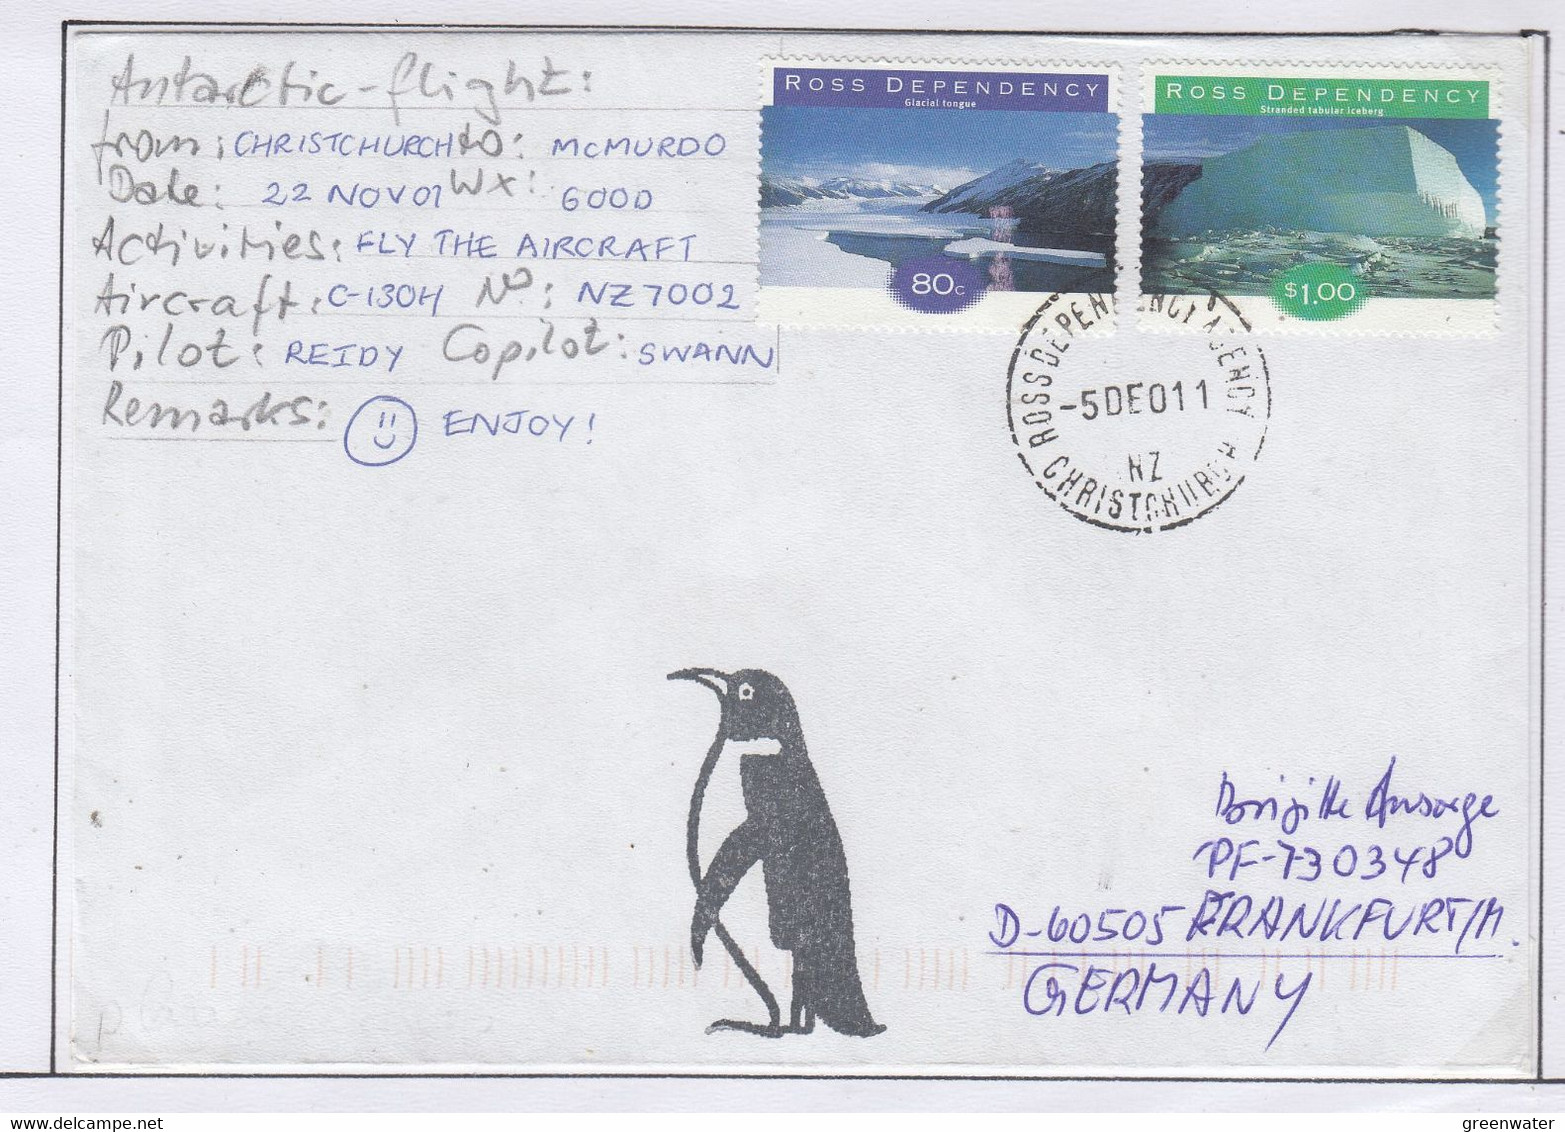 Ross Dependency Scott Base 2001 Antarctic Flight  Christchurch To McMurdo.22 NOV 01 Ca Ross 5 DE 2001 (AF167A) - Vols Polaires